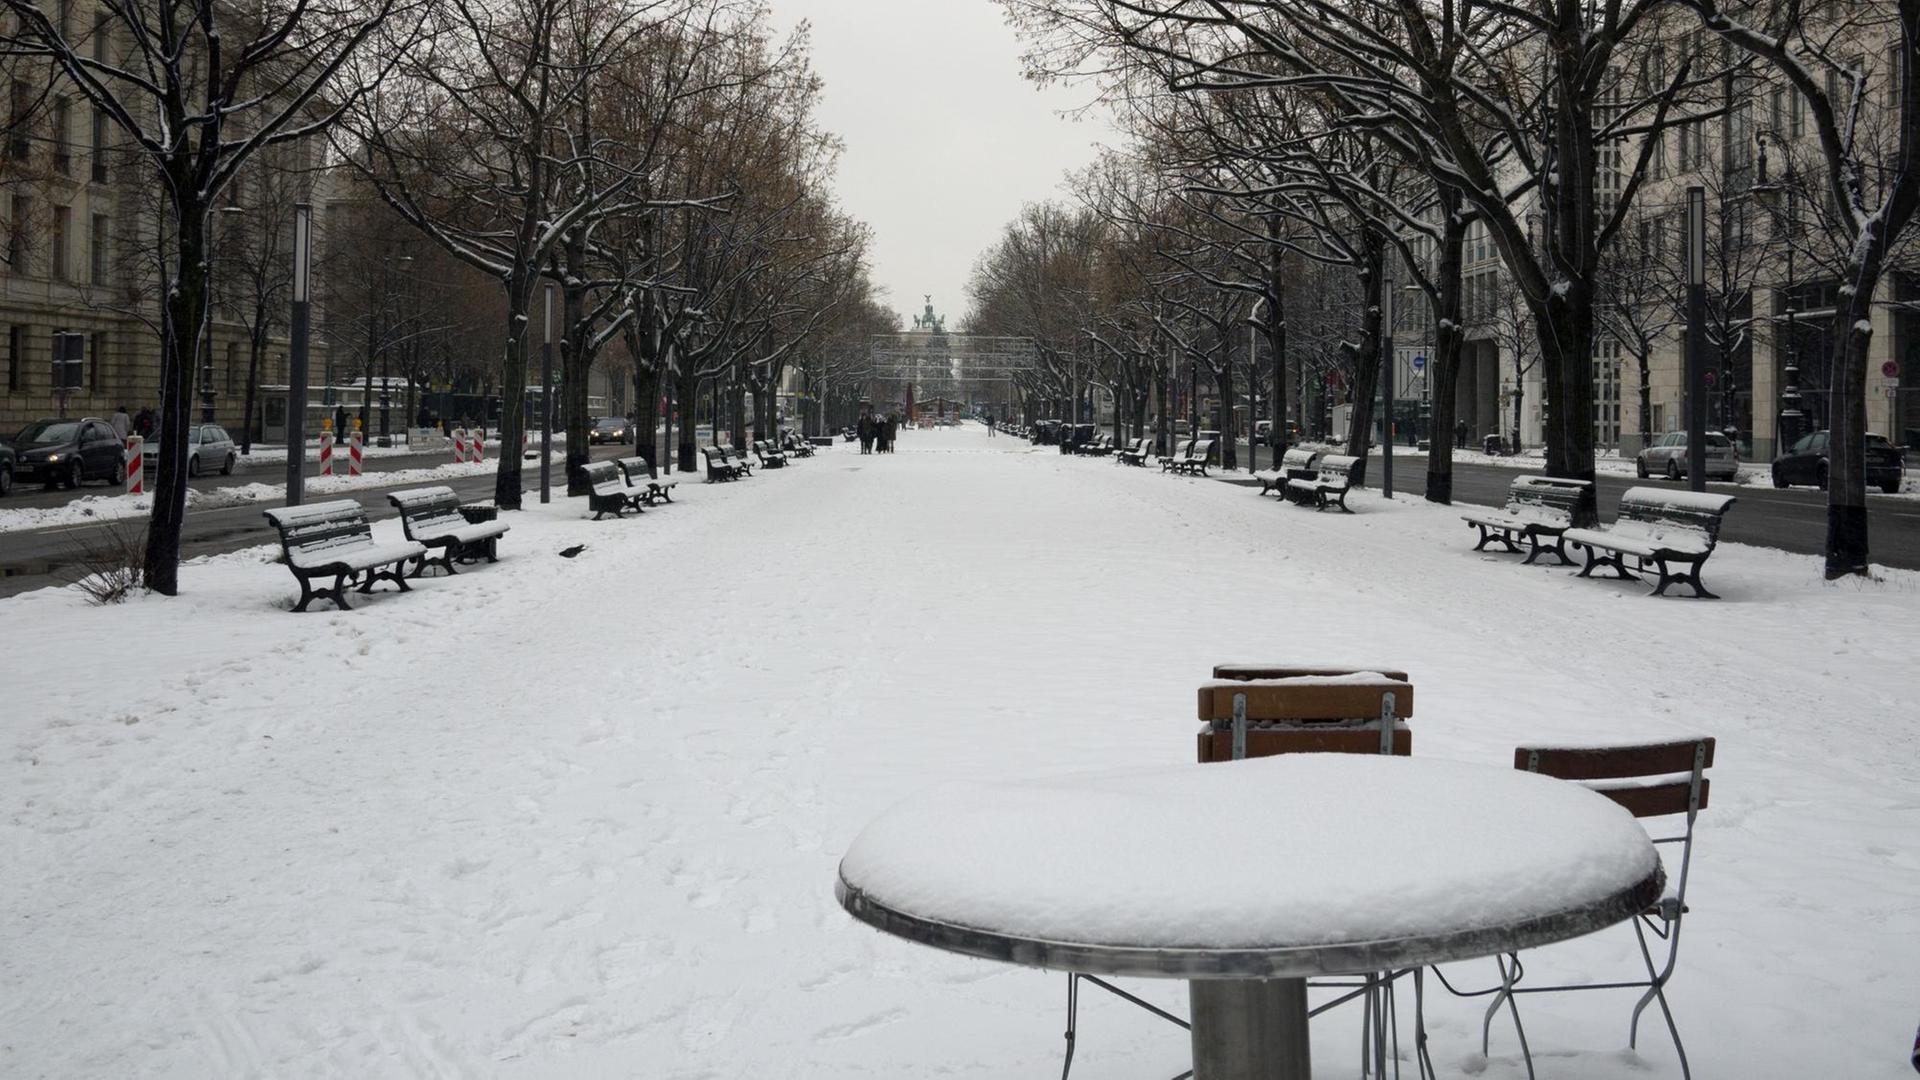 Die verschneite Promenade der Straße Unter den Linden in Berlin, aufgenommen am 11.12.2012 in Richtung Pariser Platz bzw. Brandenburger Tor. Foto: | Verwendung weltweit